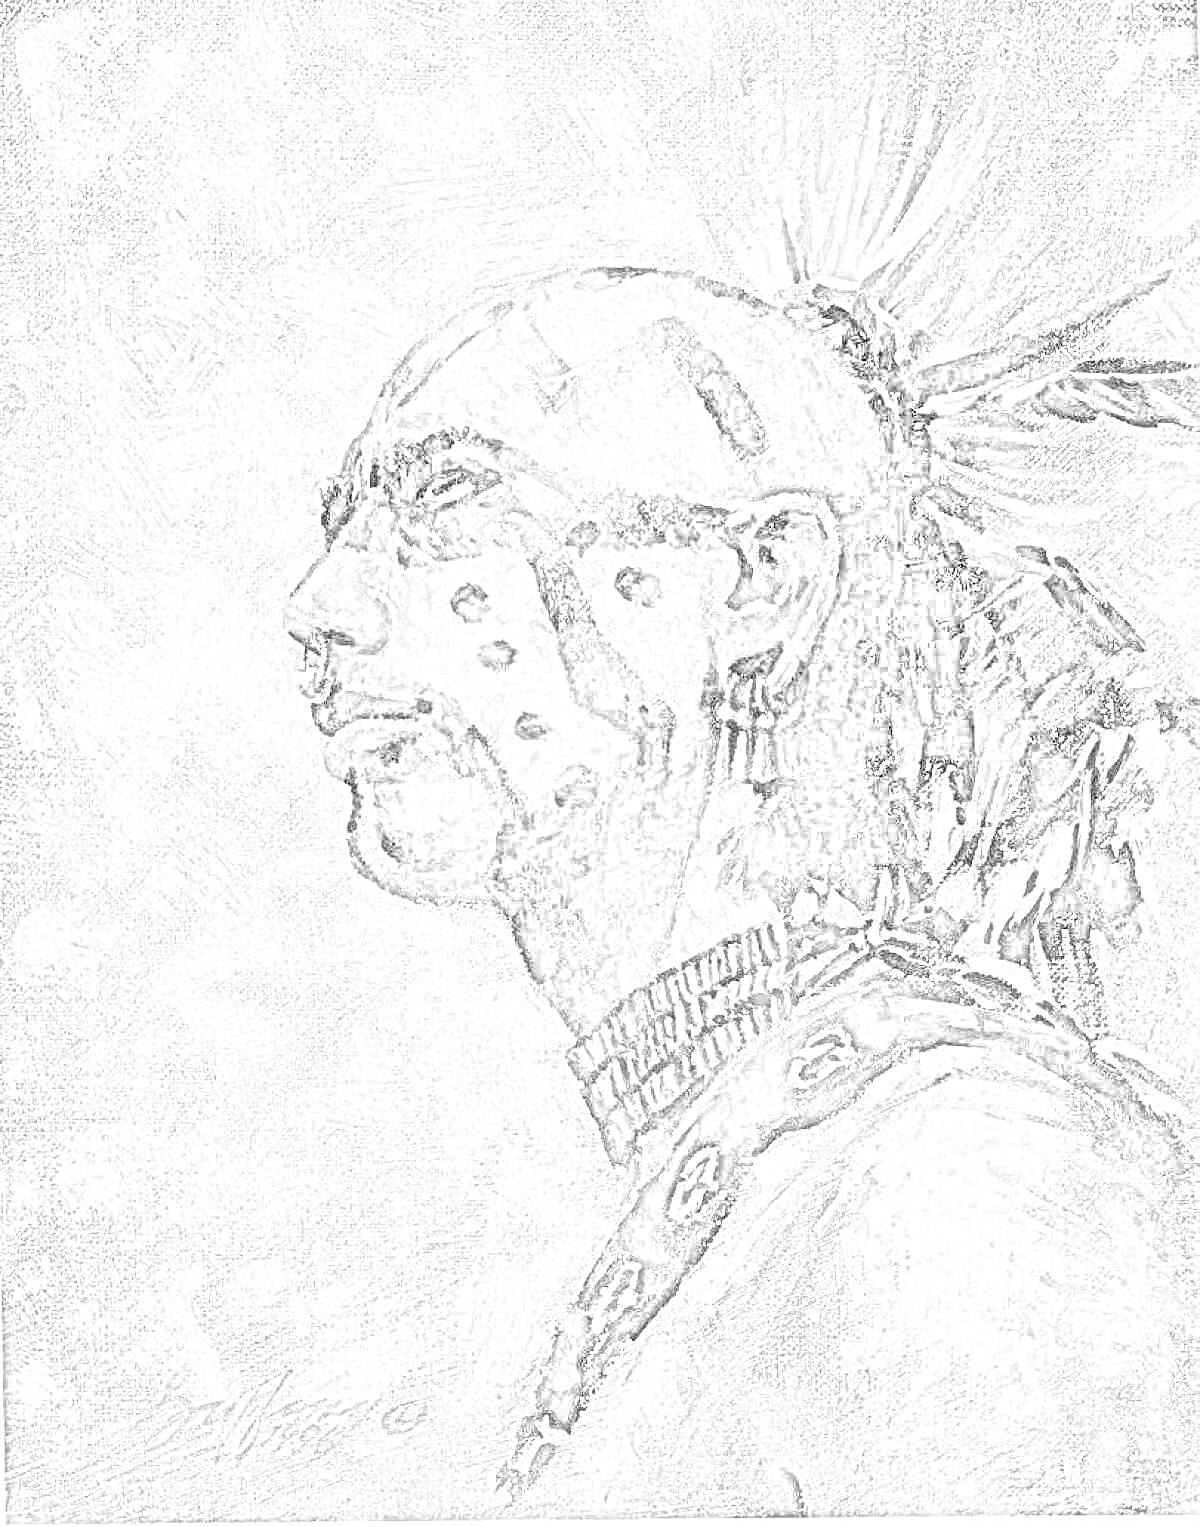 Раскраска Портрет индейца в боевом раскрасе, вид сбоку, с украшениями и перьями